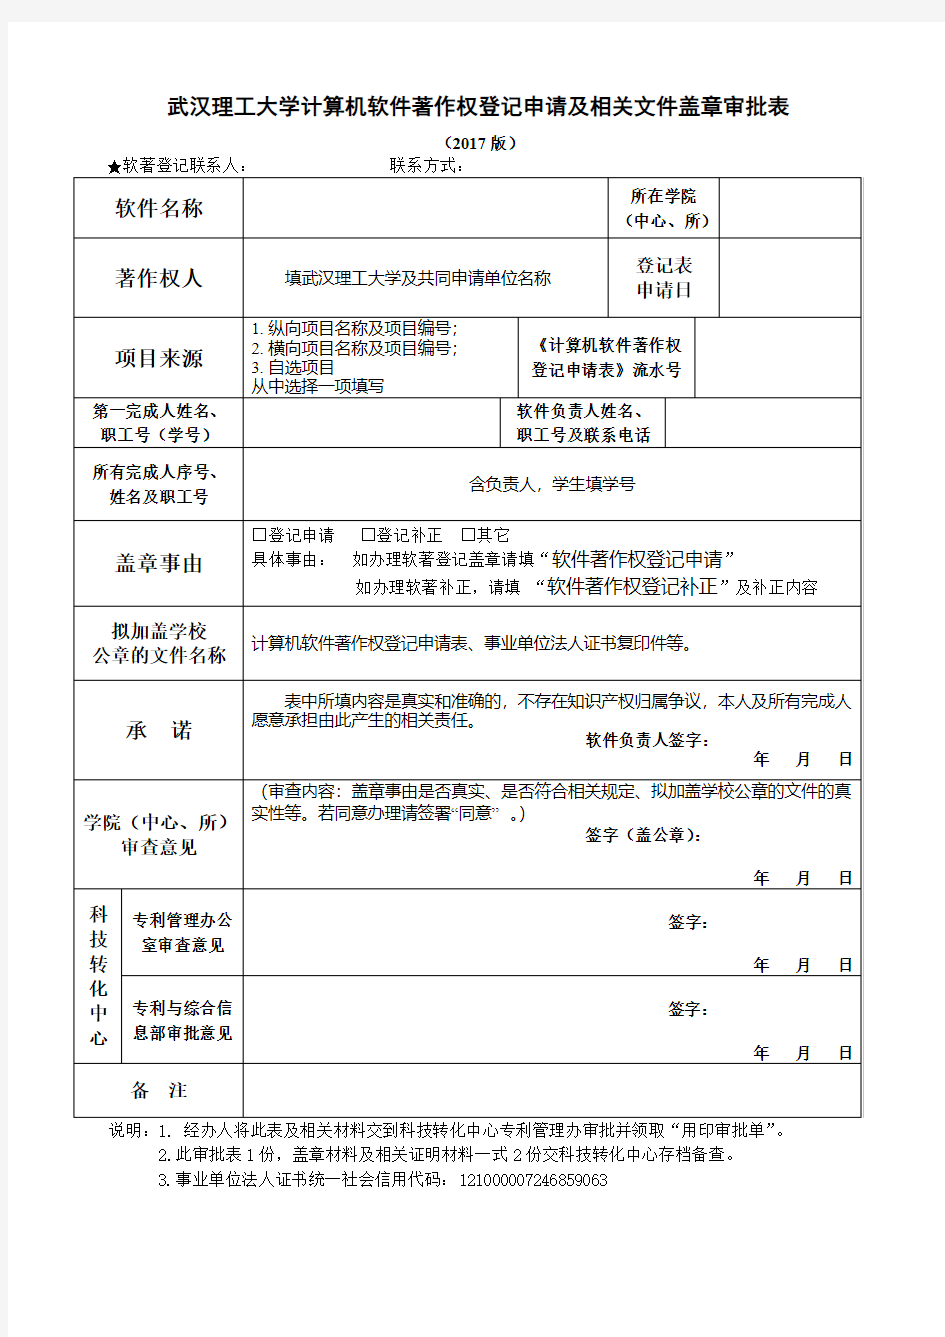 武汉理工大学计算机软件著作权登记申请及相关文件盖章审批表